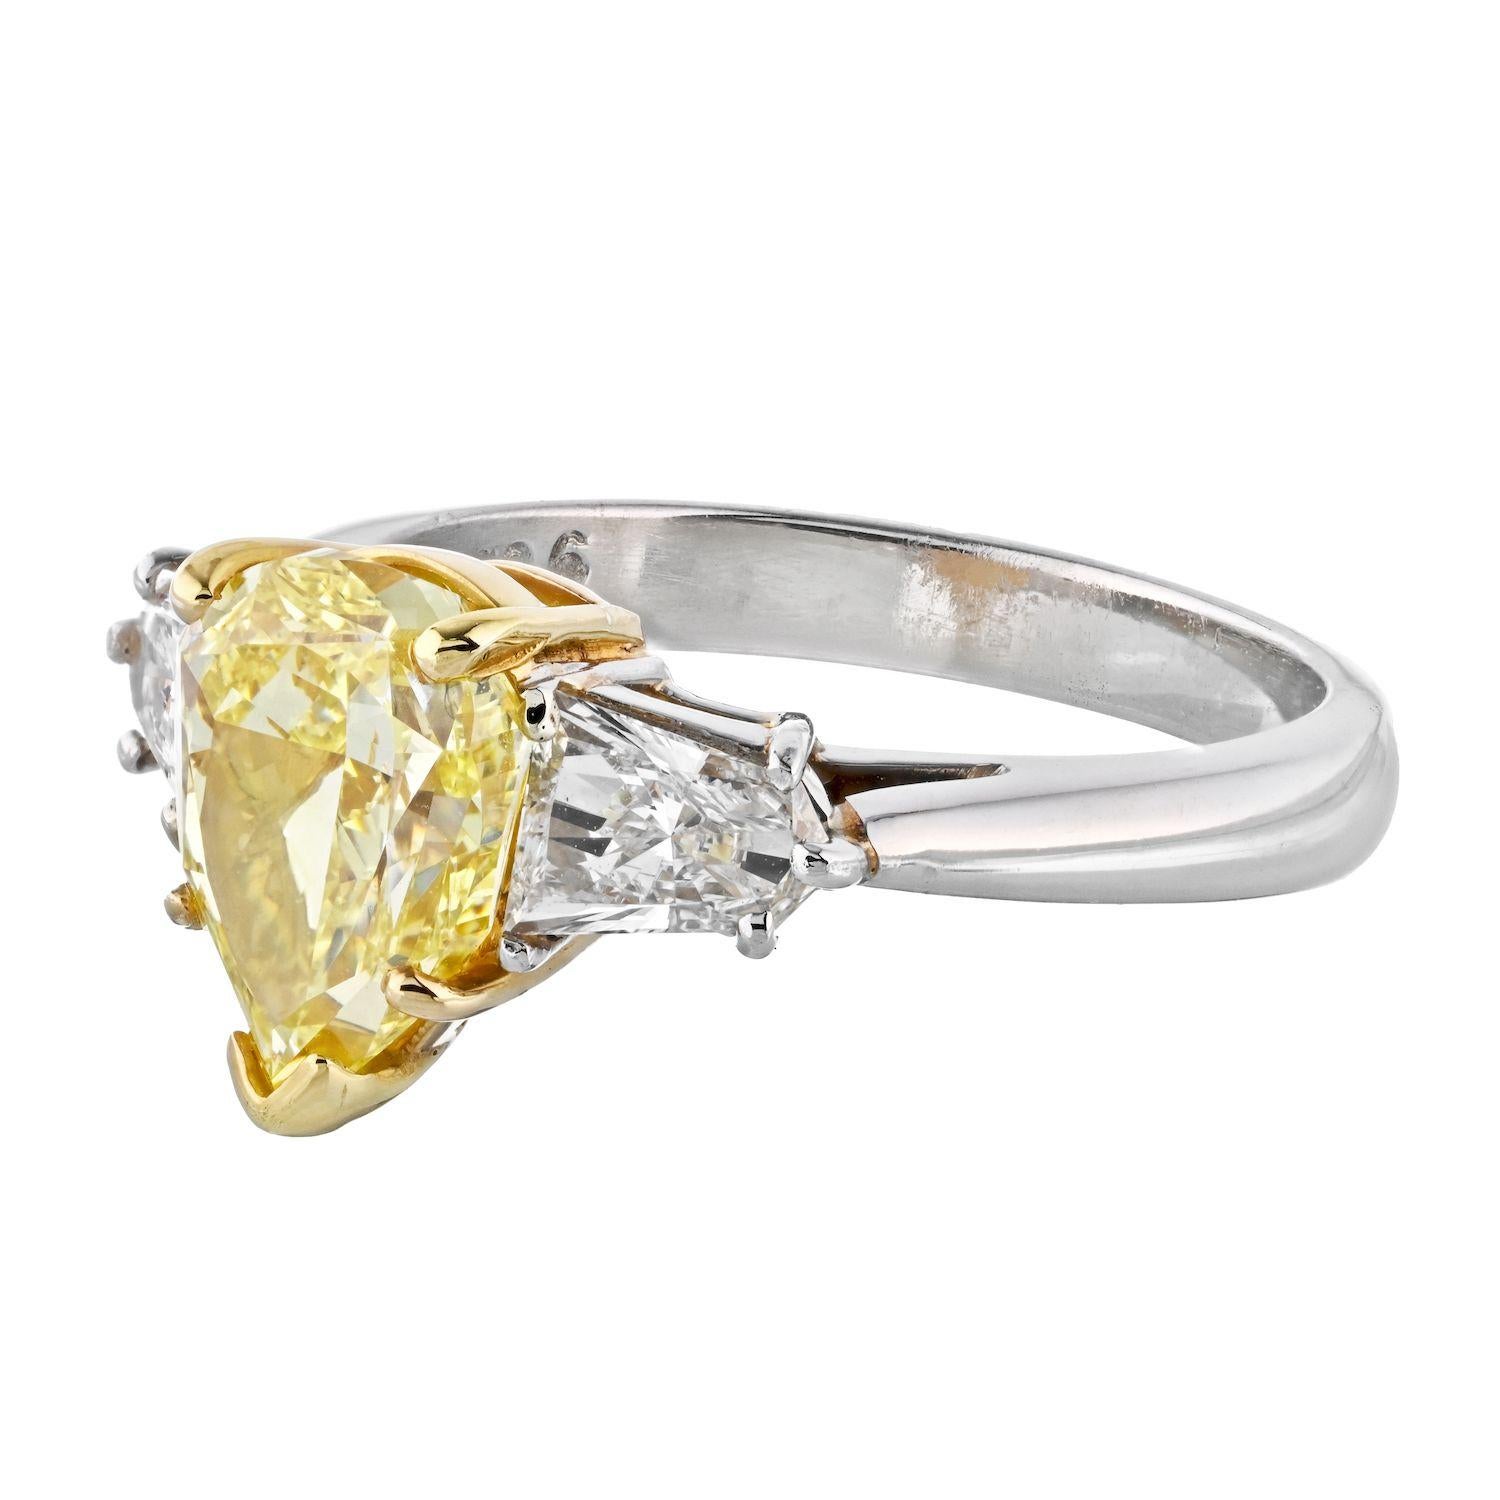 Verlobungsring mit drei gelben Diamanten aus Platin und 18 Karat Gelbgold. Montiert mit einem 2,24 Karat Birnenschliff natürlichen fancy gelb intensive Farbe, VS1 Klarheit, zertifiziert GIA Diamant. Seitliche Diamanten sind natürliche weiße